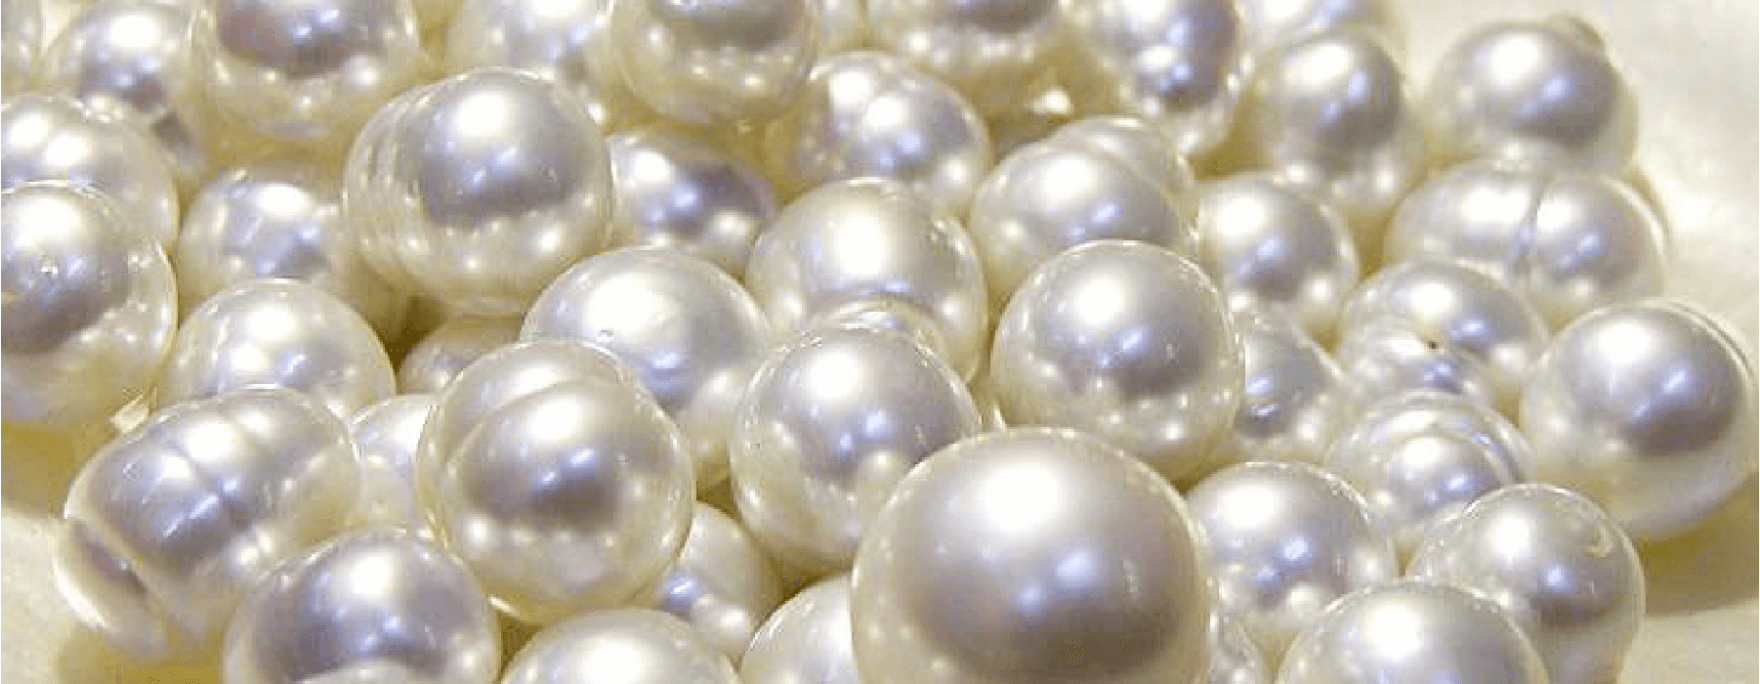 Perlové šperky jsou velmi nadčasové a sluší ženám a dívkám v každém věku